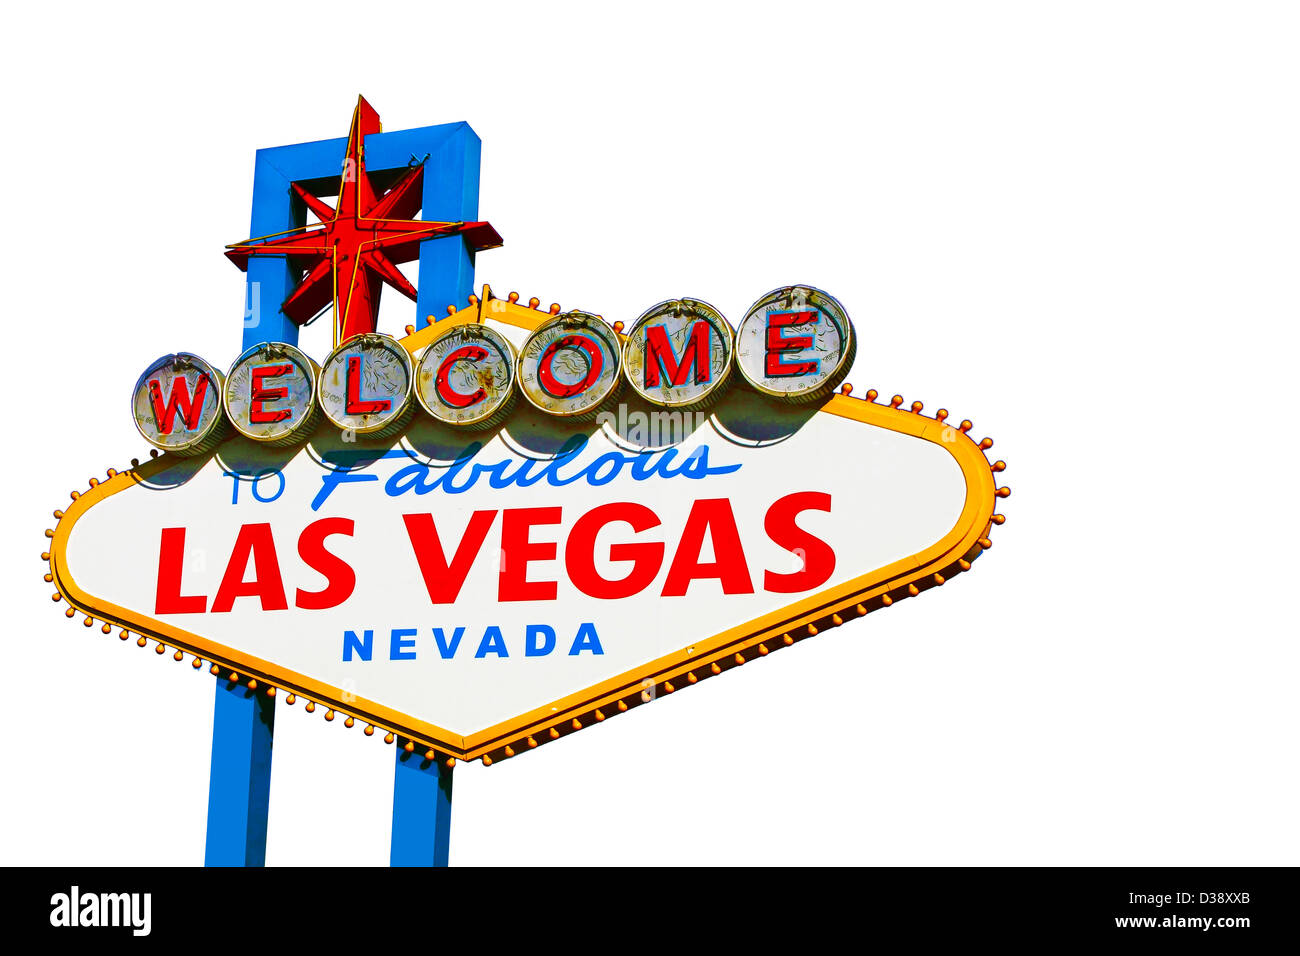 Billet d Las Vegas fond blanc Banque D'Images